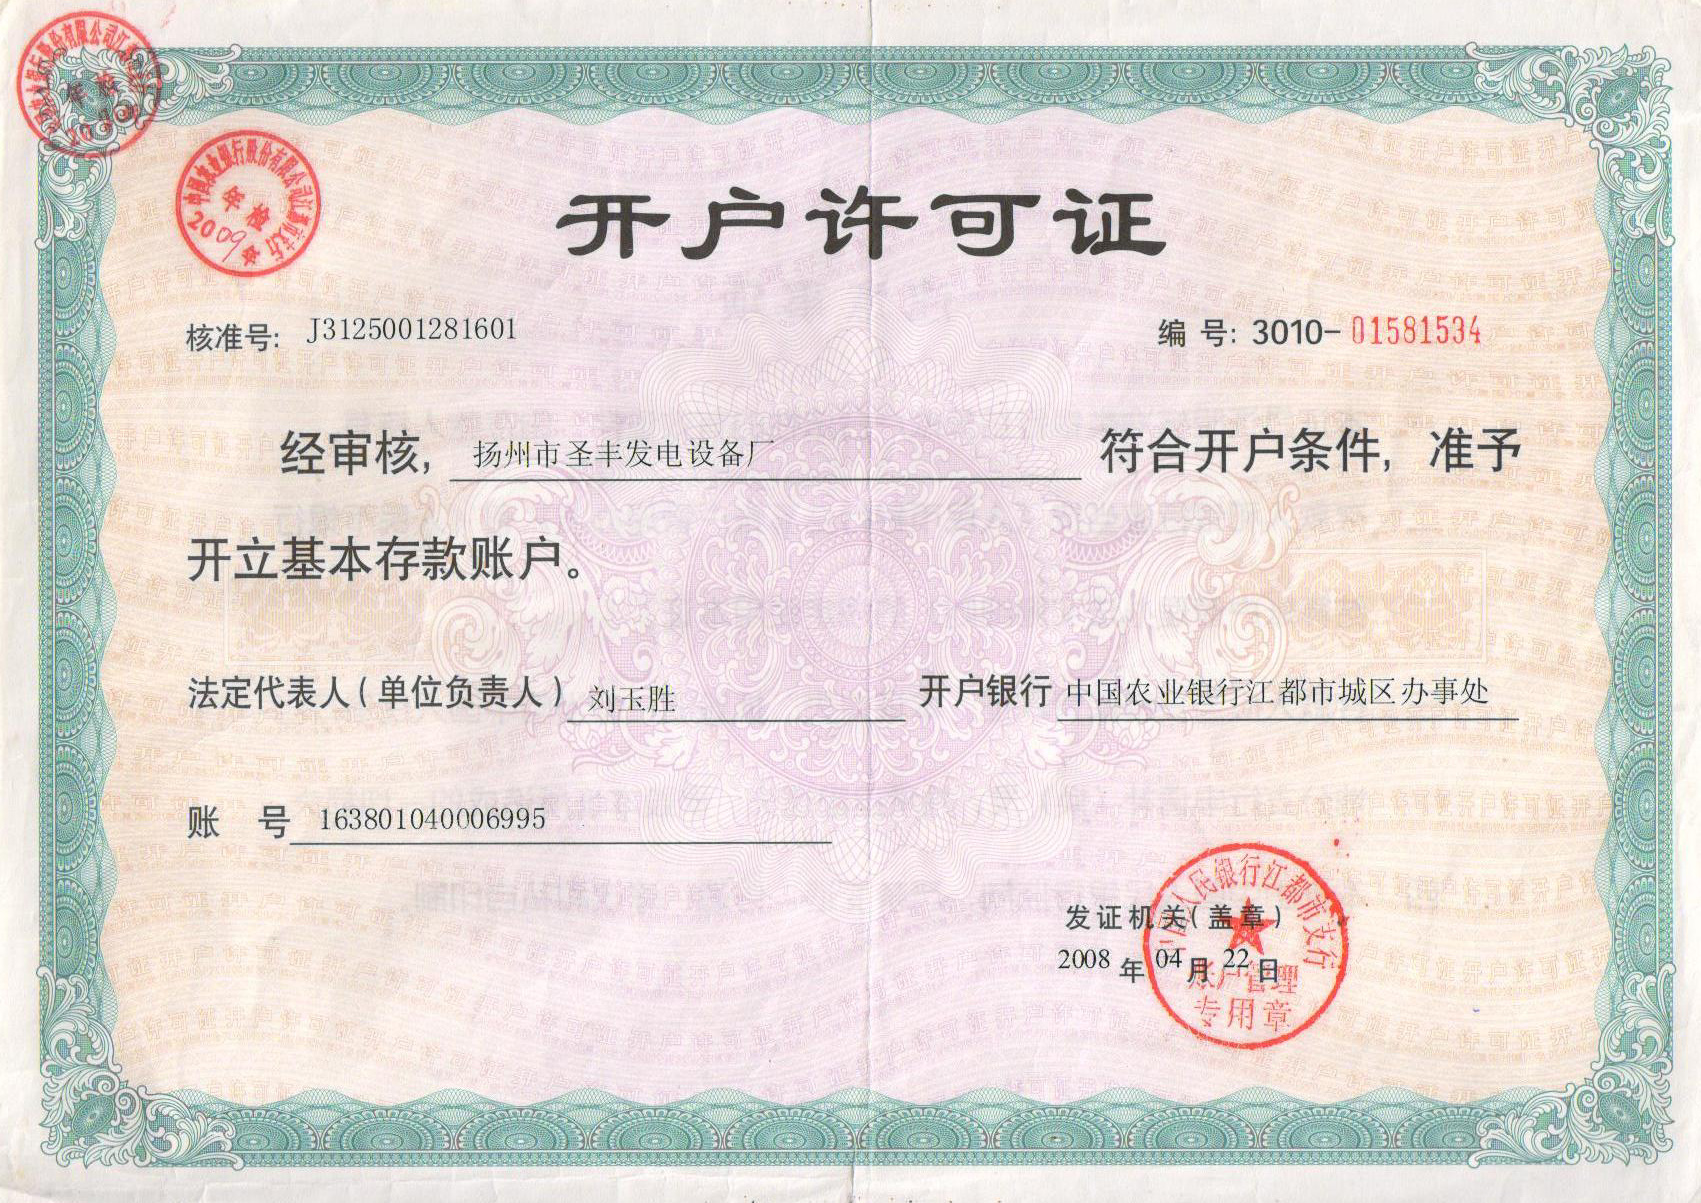 扬州市圣丰发电设备厂-开户许可证